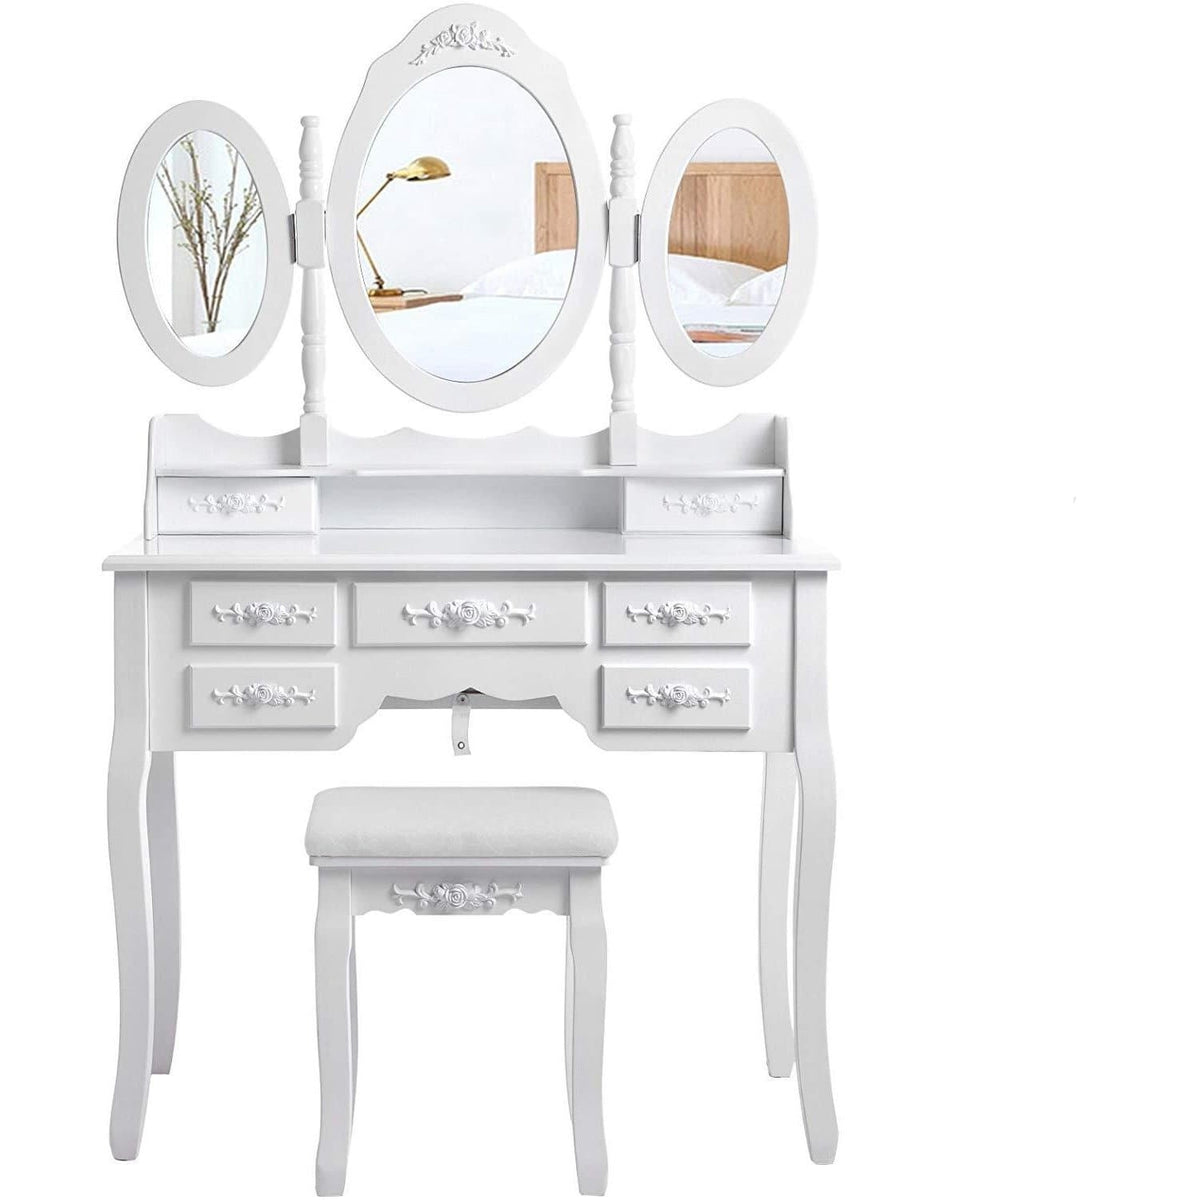 Nancy's Crenshaw Luxe Kaptafel Set – Make-up Met 3 Spiegels & Kruk